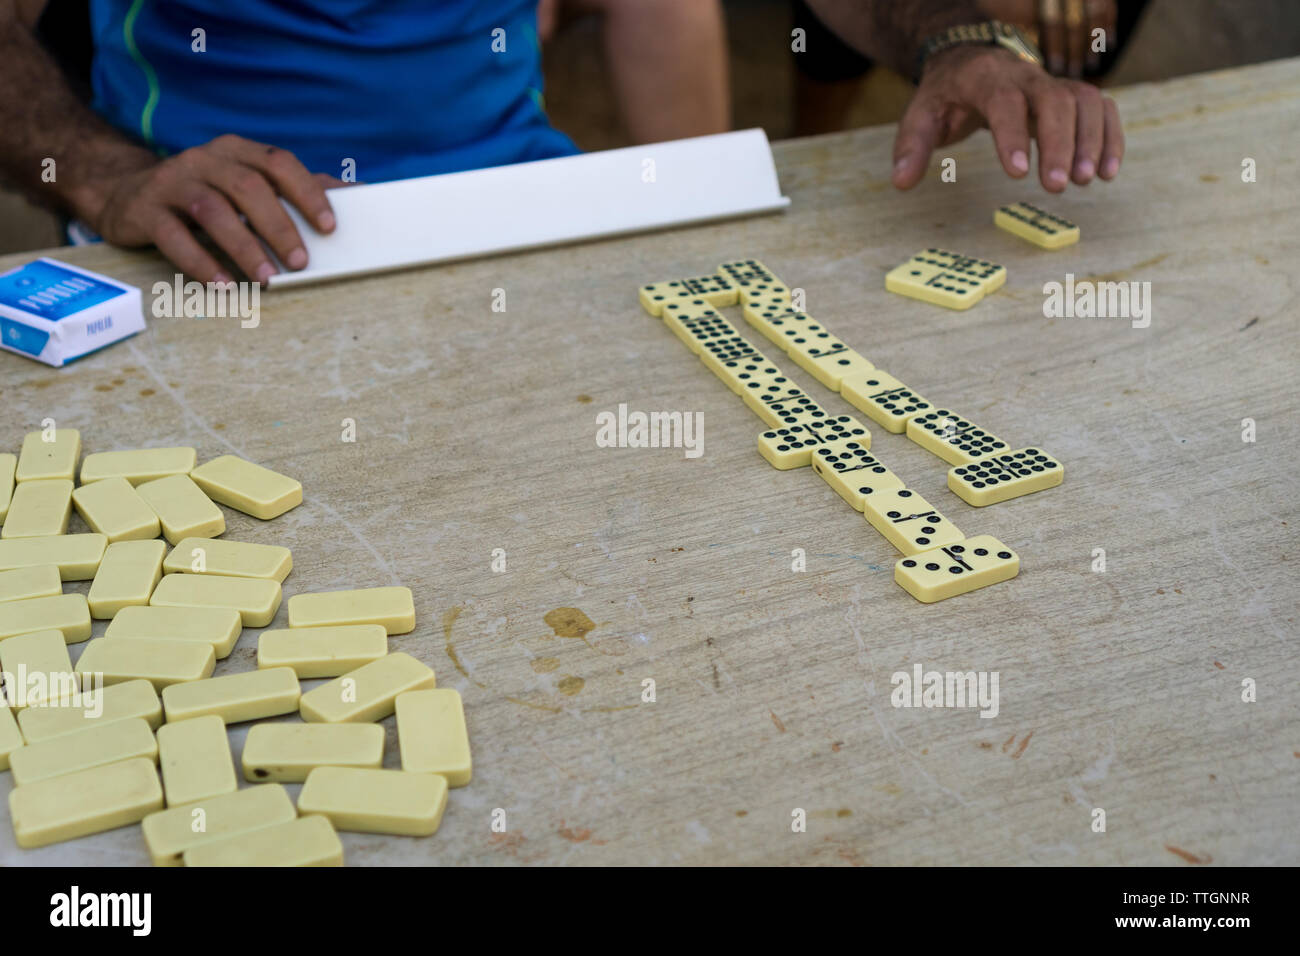 Messieurs jouer a dire du jeu de dominos. Trinidad, Cuba. 2017 Banque D'Images